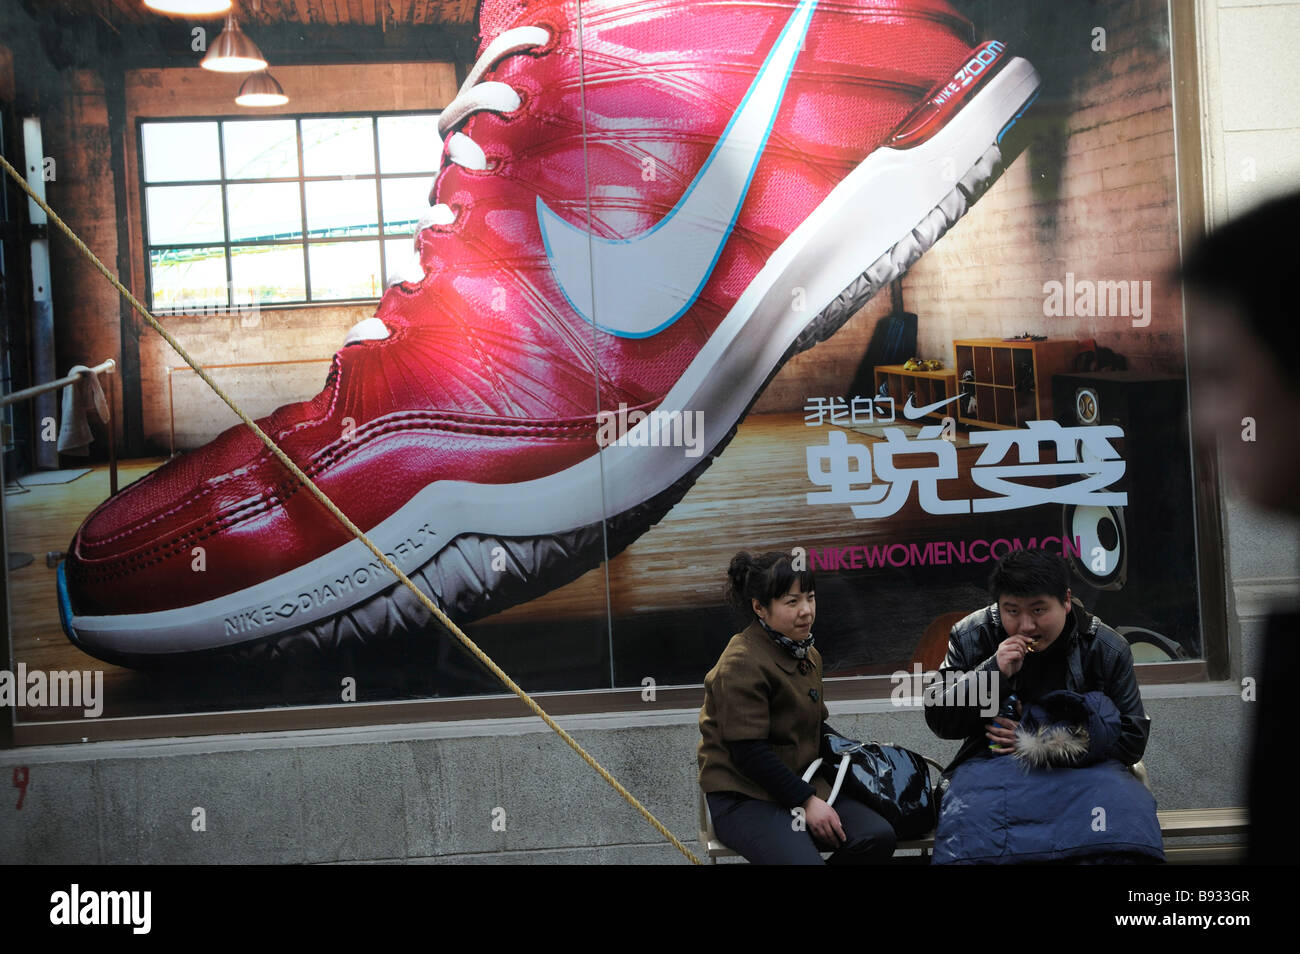 Publicité Nike à Tianjin, Chine. 14-Mar-2009 Banque D'Images